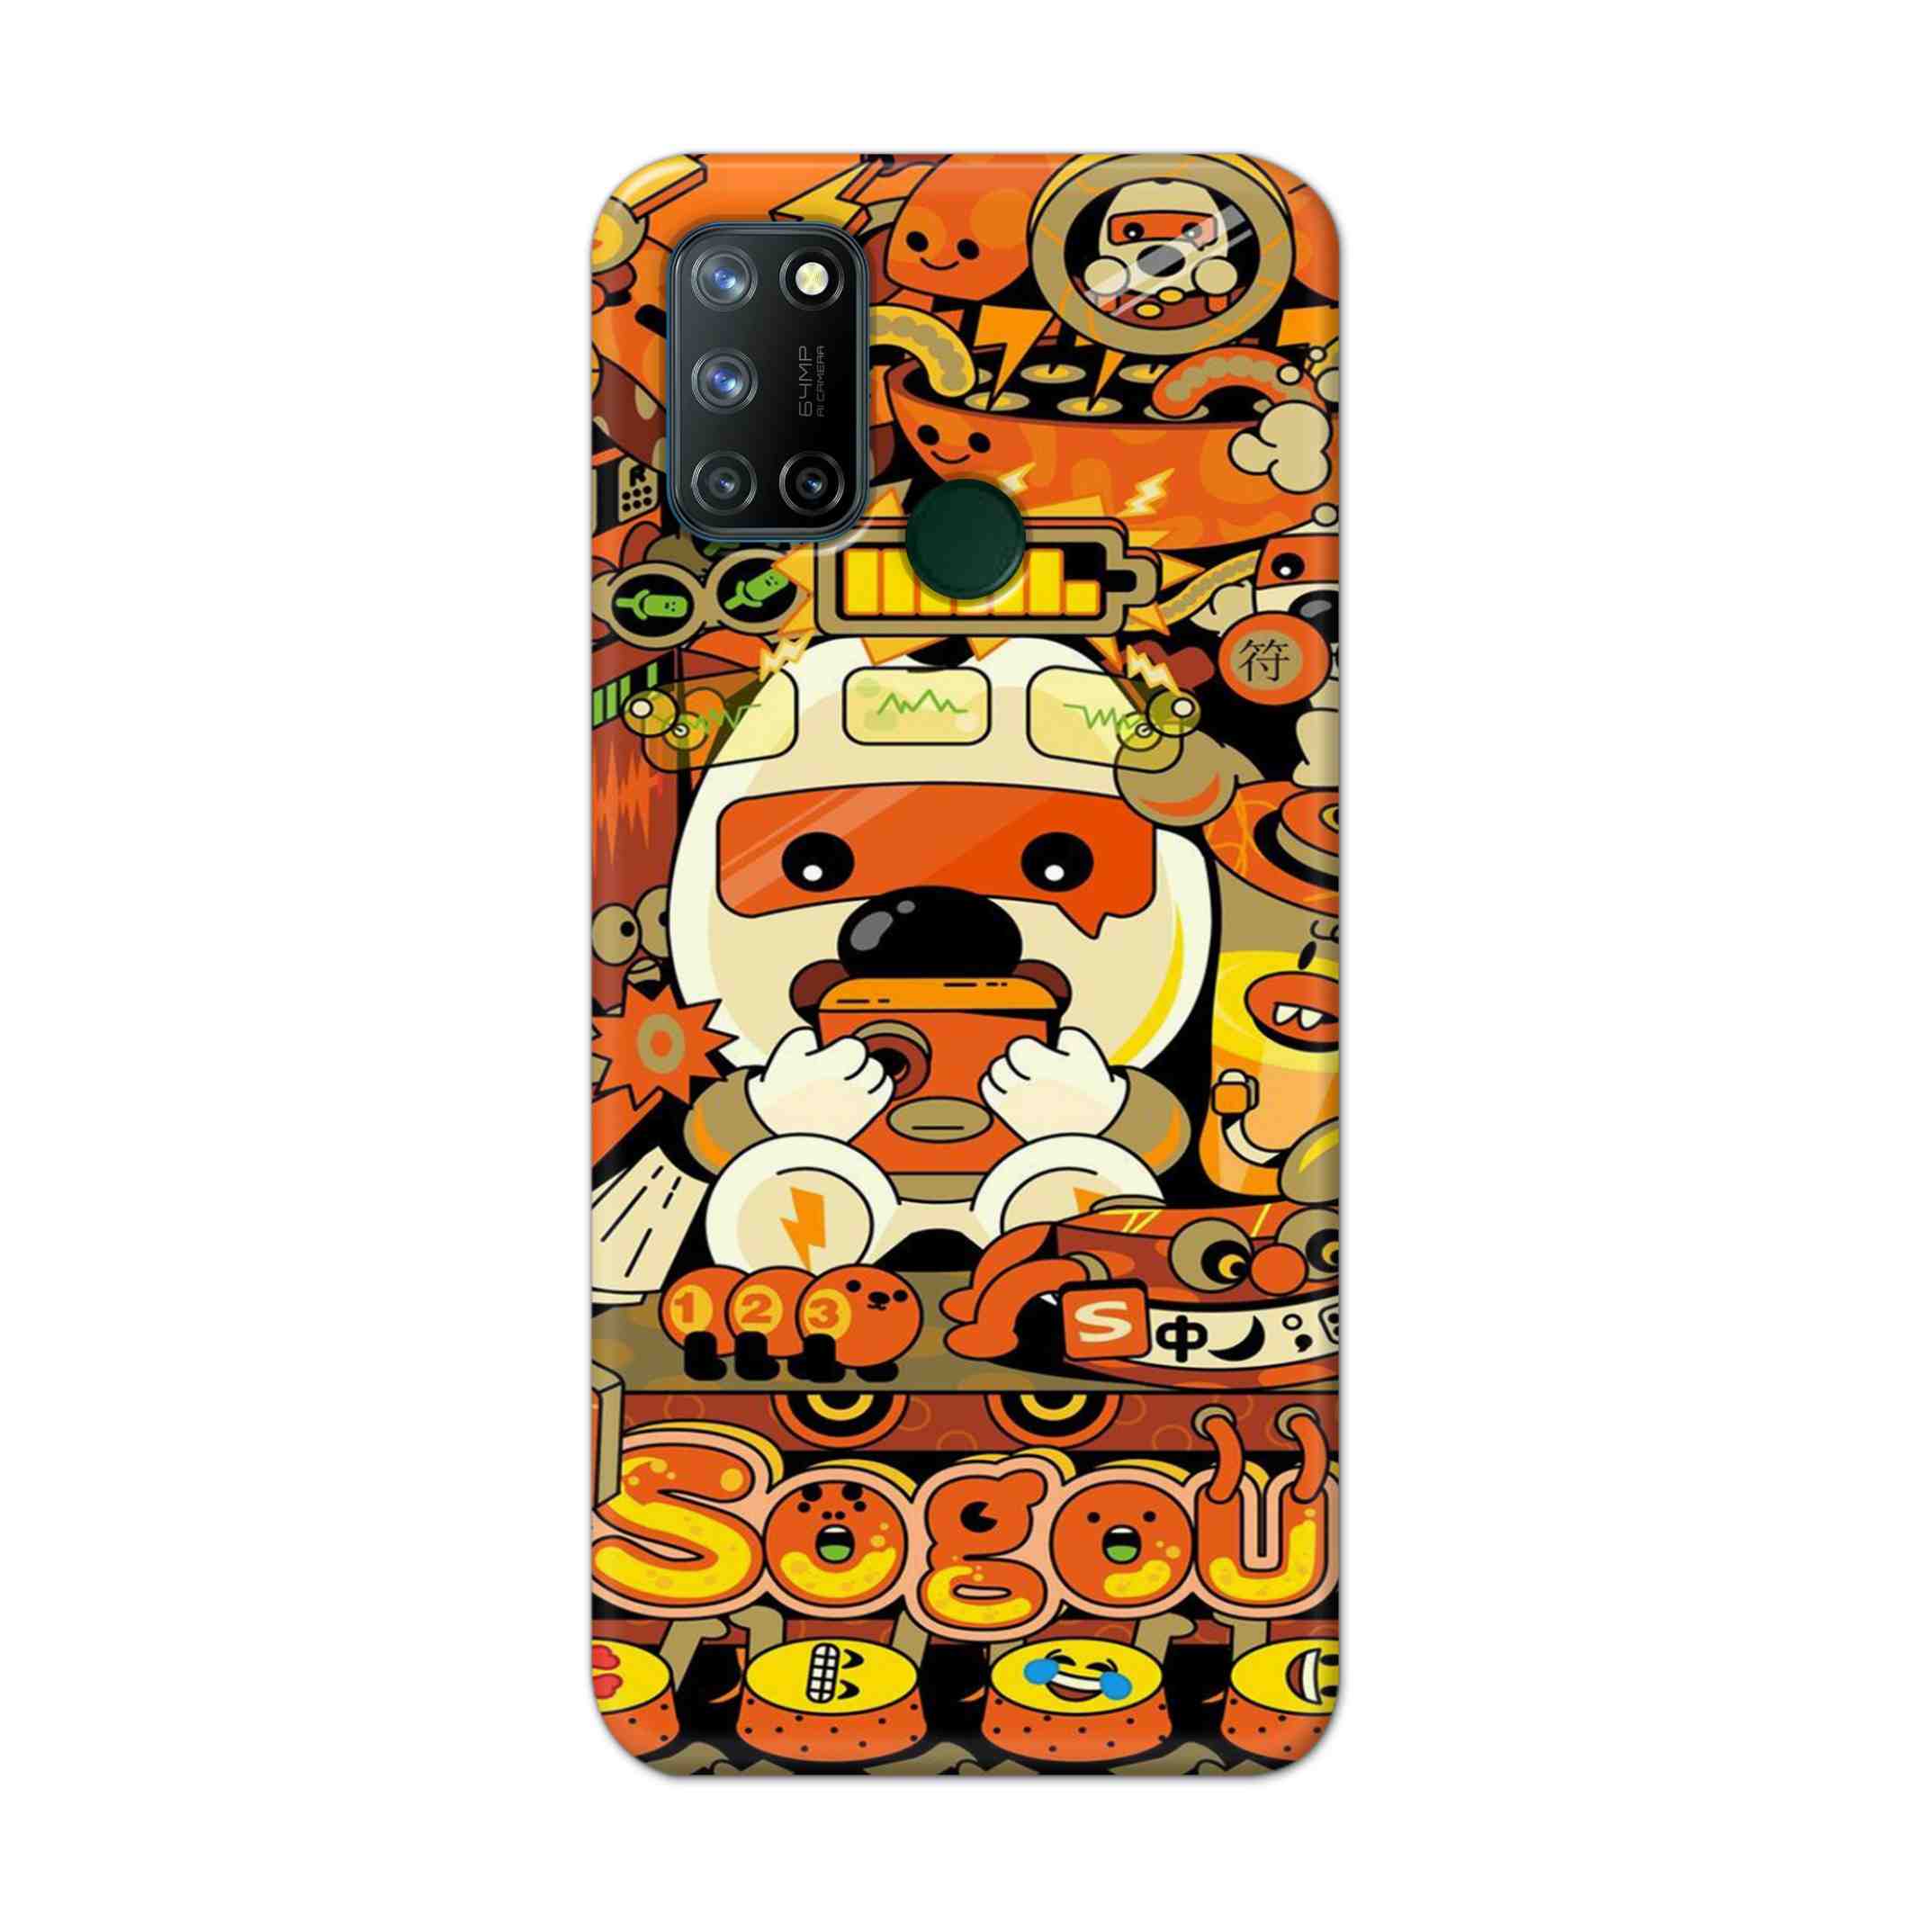 Buy Sogou Hard Back Mobile Phone Case Cover For Realme 7i Online